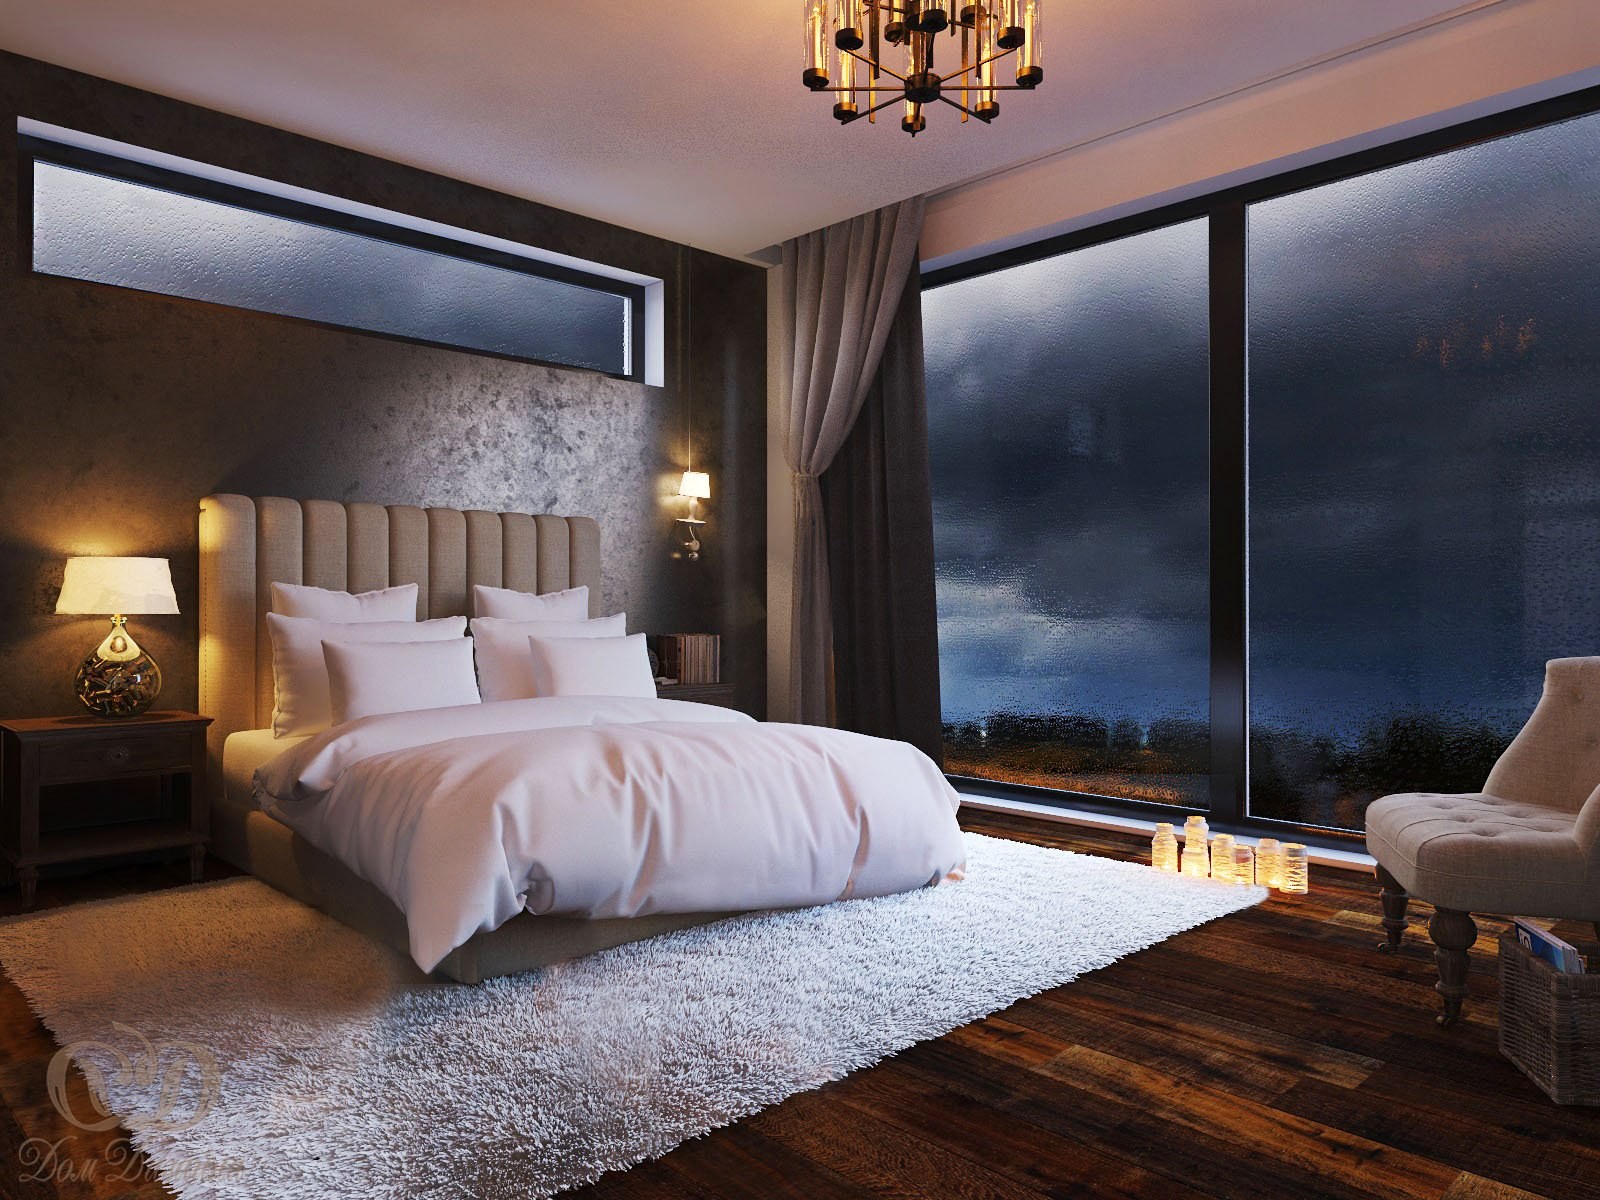 This room is big. Спальня с панорамными окнами. Красивый интерьер спальни. Большая спальня с панорамными окнами. Красивые спальные комнаты.